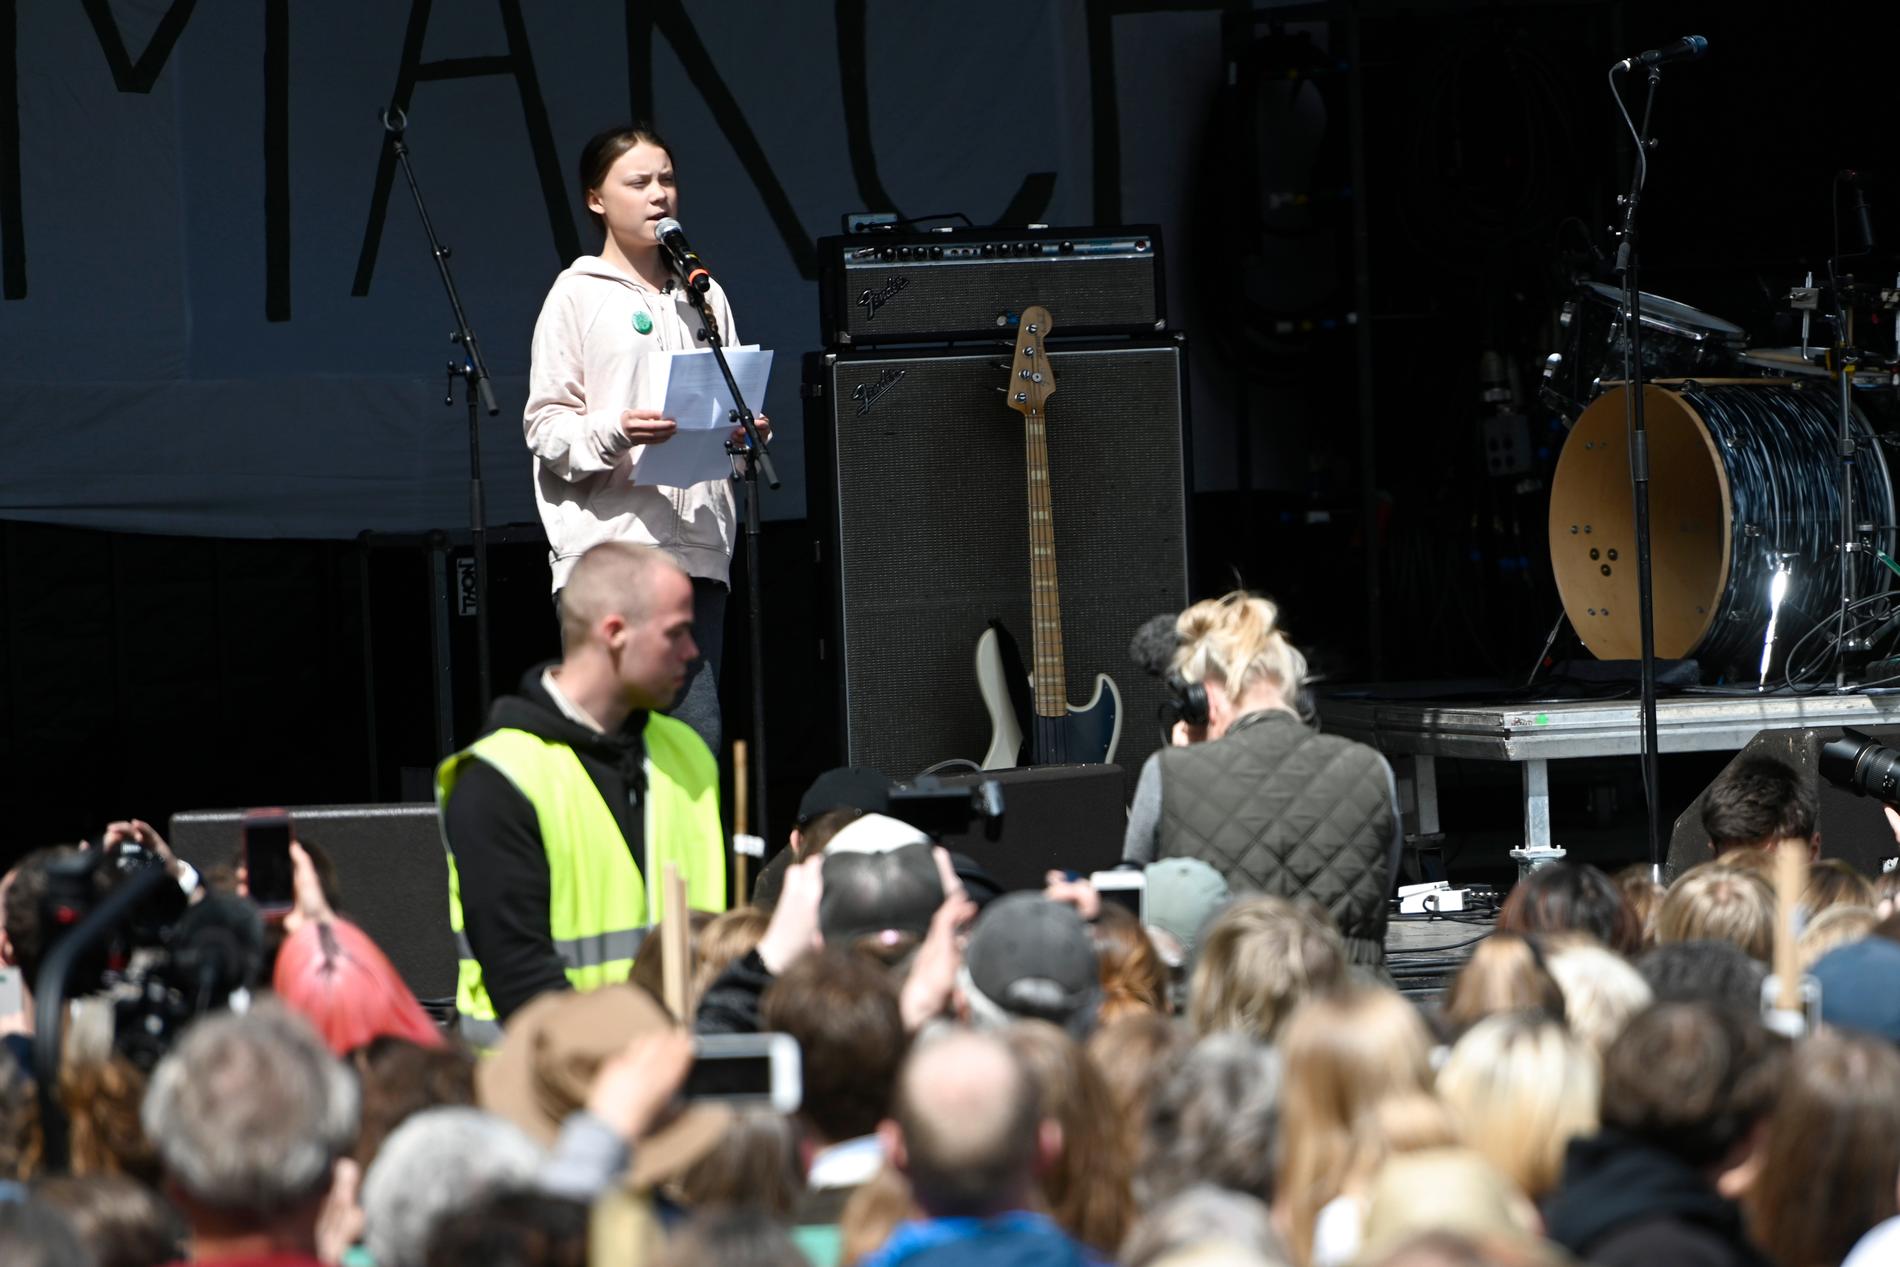 Den svenska klimataktivisten Greta Thunberg på plats och håller tal utanför Christiansborg i centrala Köpenhamn under lördagen,